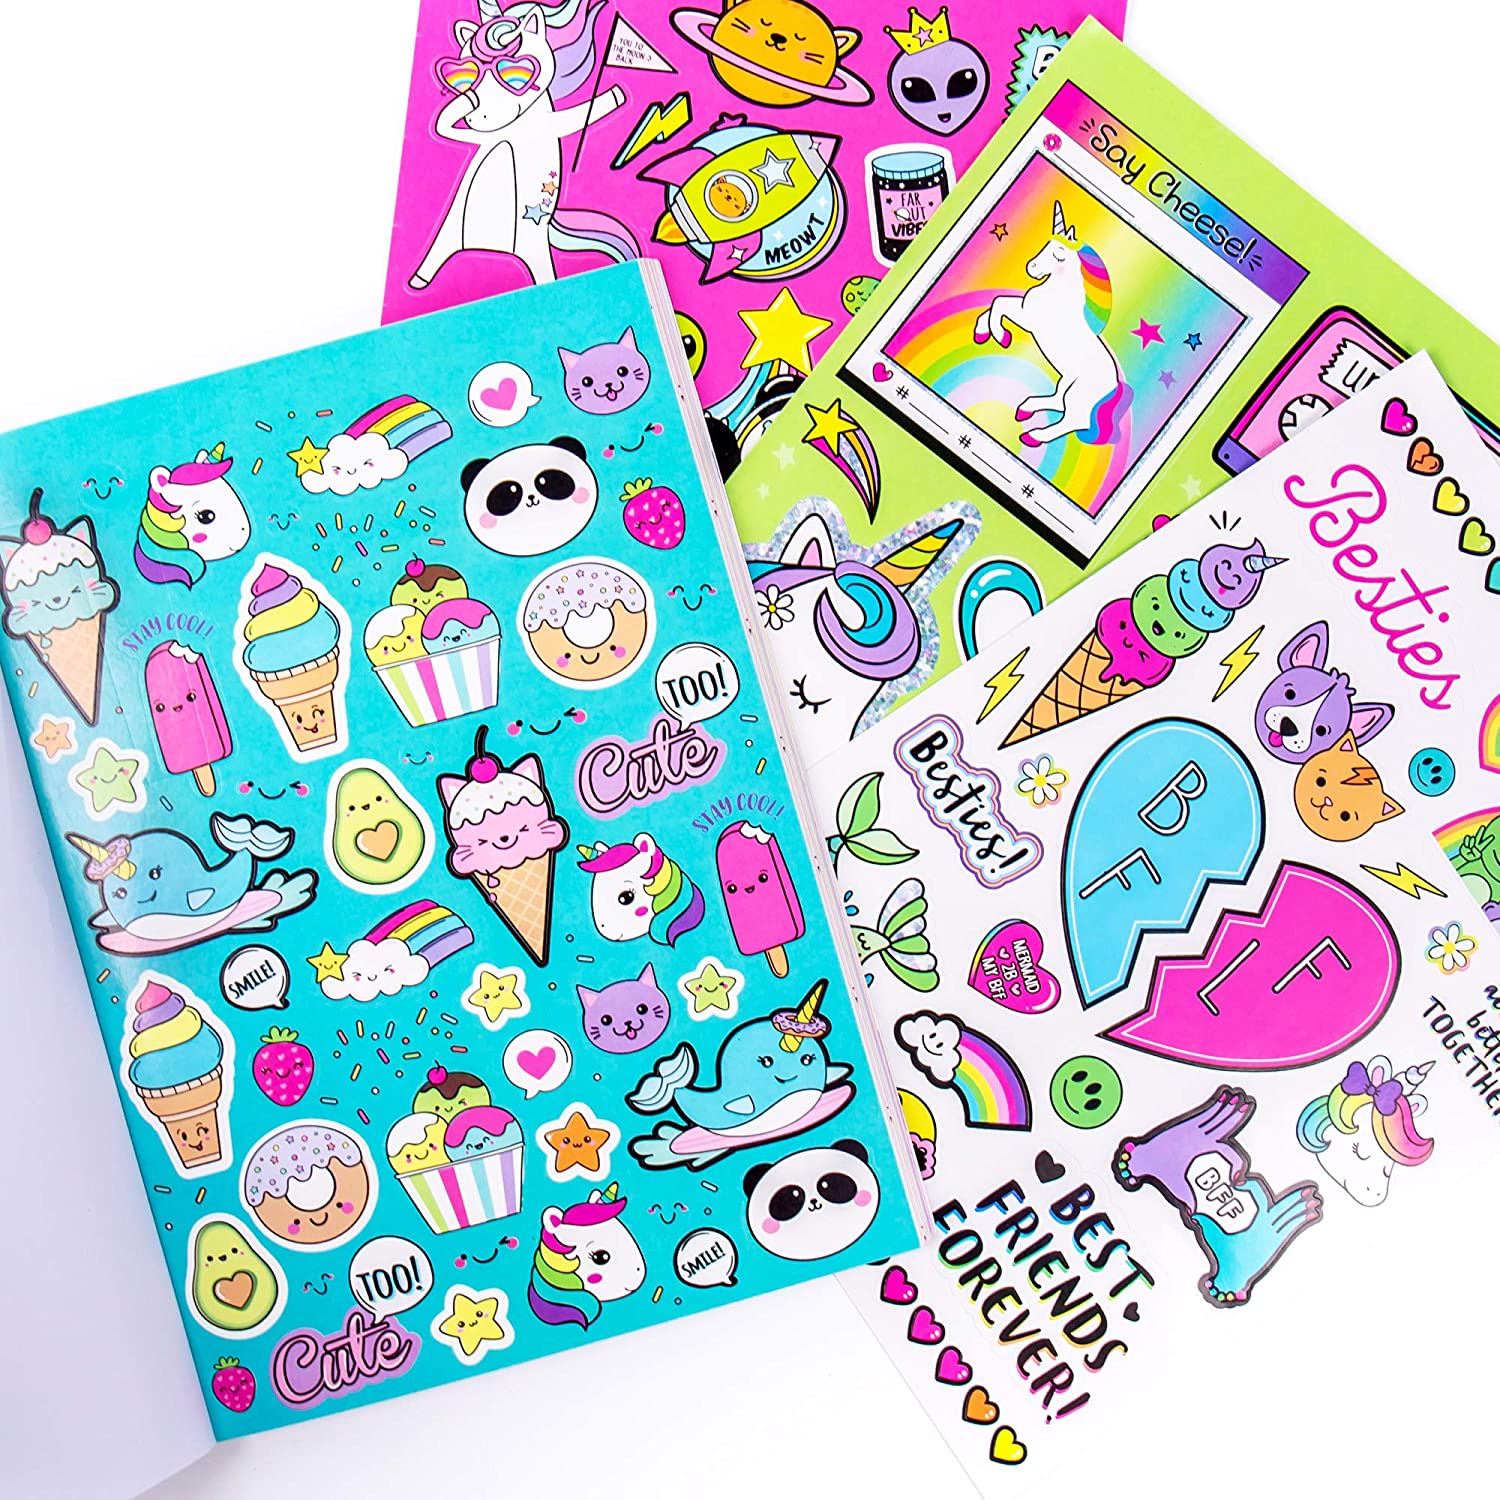 12 Sheet School Kids Stickerbook by POP! by POP! | Joann x Ribblr